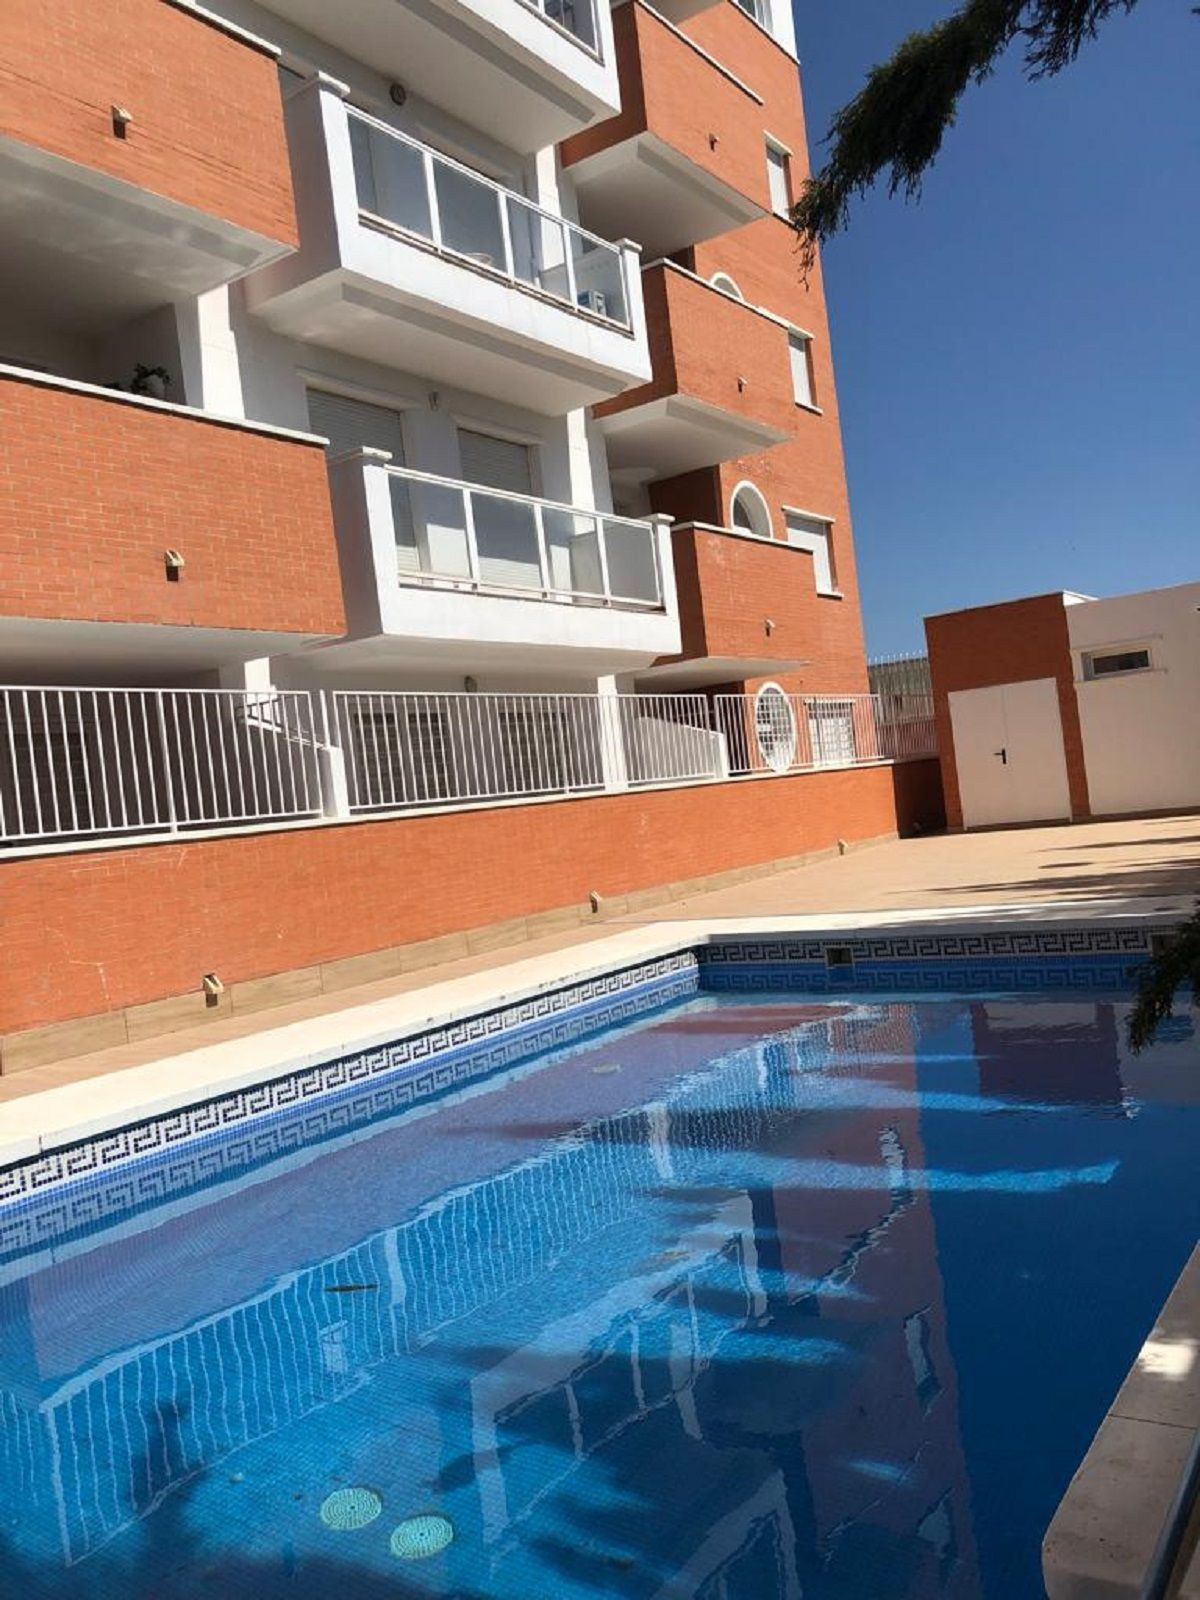 1 Dormitorios Apartamento Planta Media  En Venta Las Lagunas, Costa del Sol - HP4343134